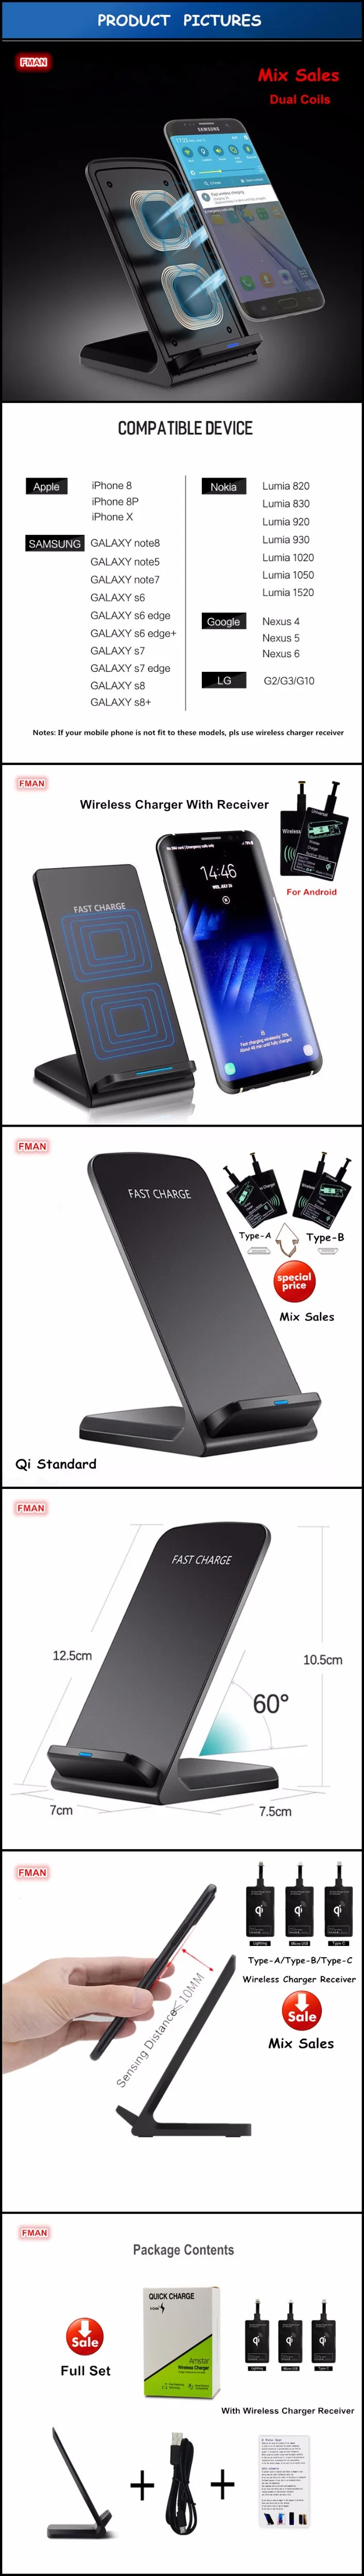 FMAN Mix двойной катушки Qi быстрая Беспроводная зарядка для iPhone 8 X samsung Galaxy S6 S7 S8 plus USB беспроводное зарядное устройство держатель